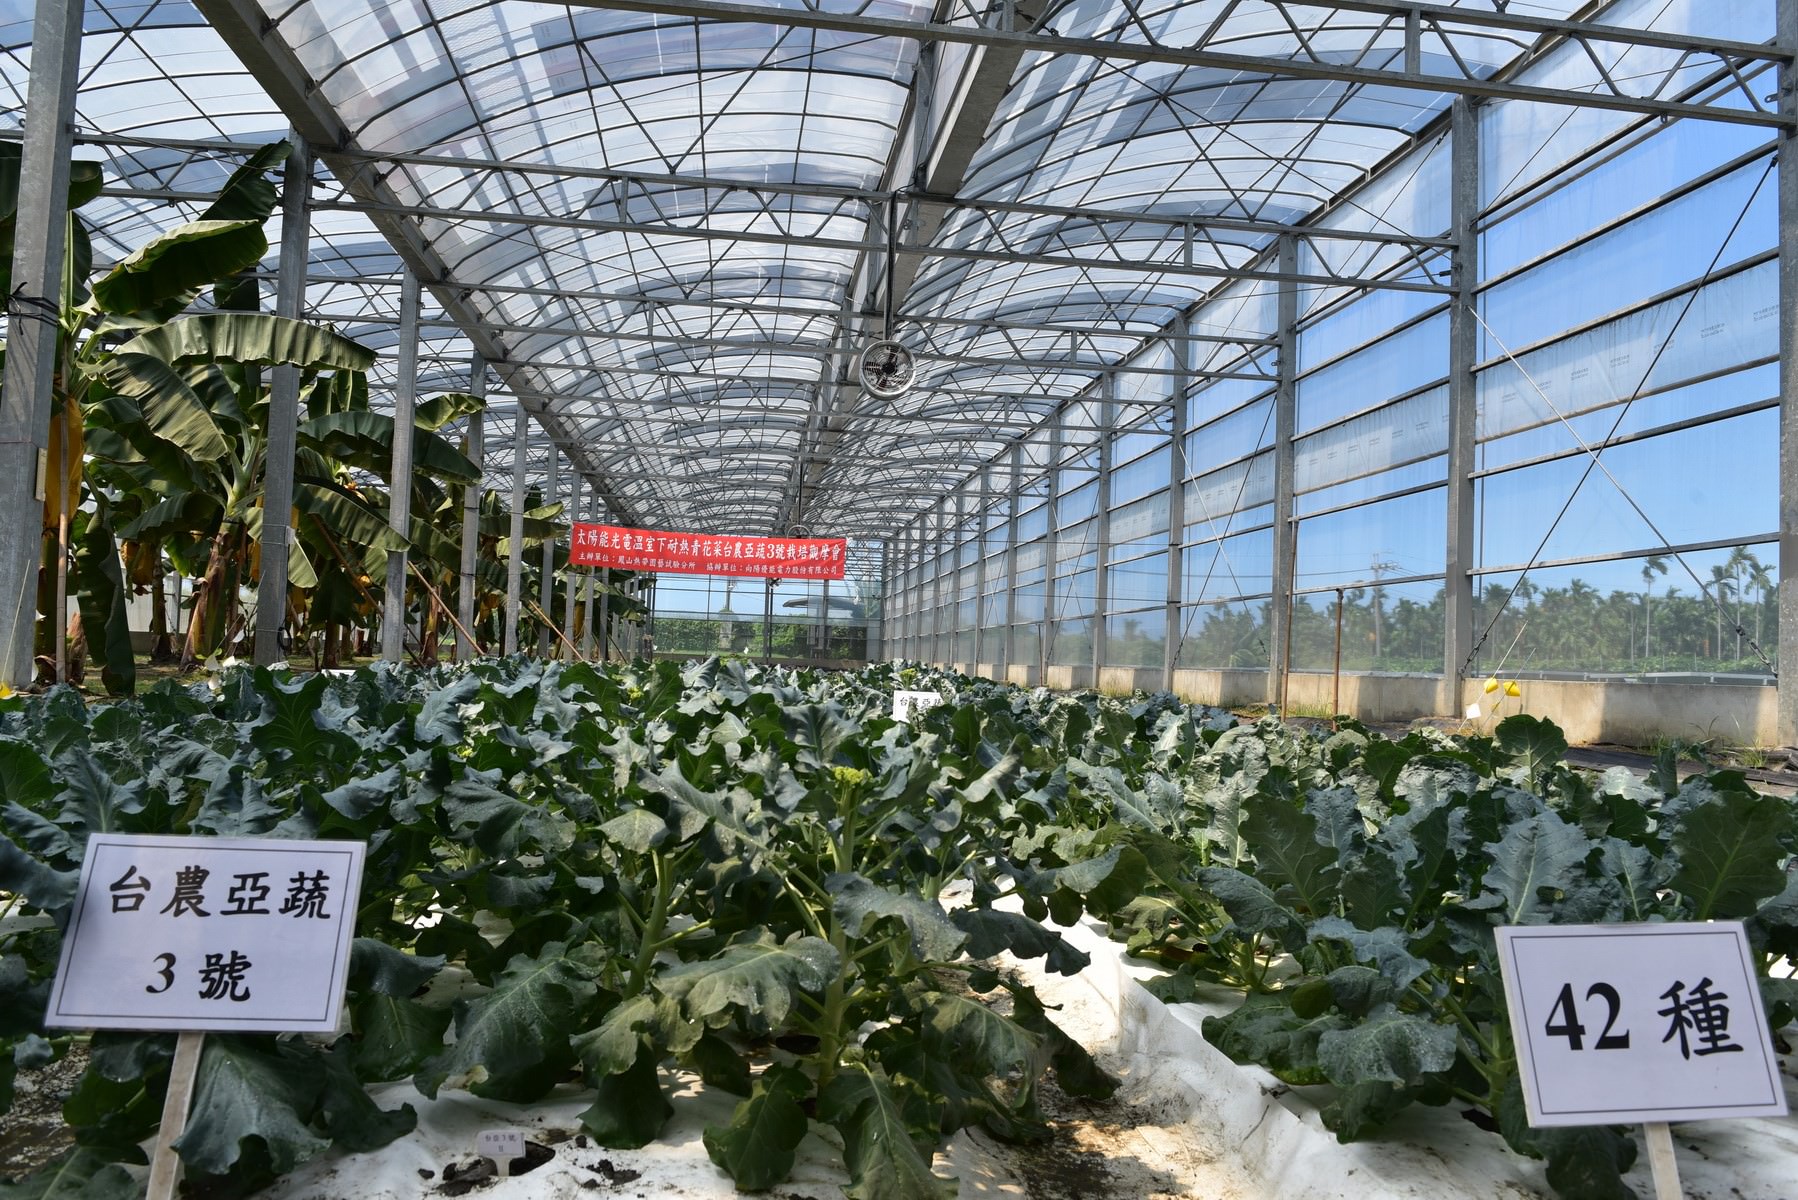 光電溫室夏季栽培「台農亞蔬3號」青花菜之現場（台農亞蔬3號已結球，「42」品種尚未形成花球）